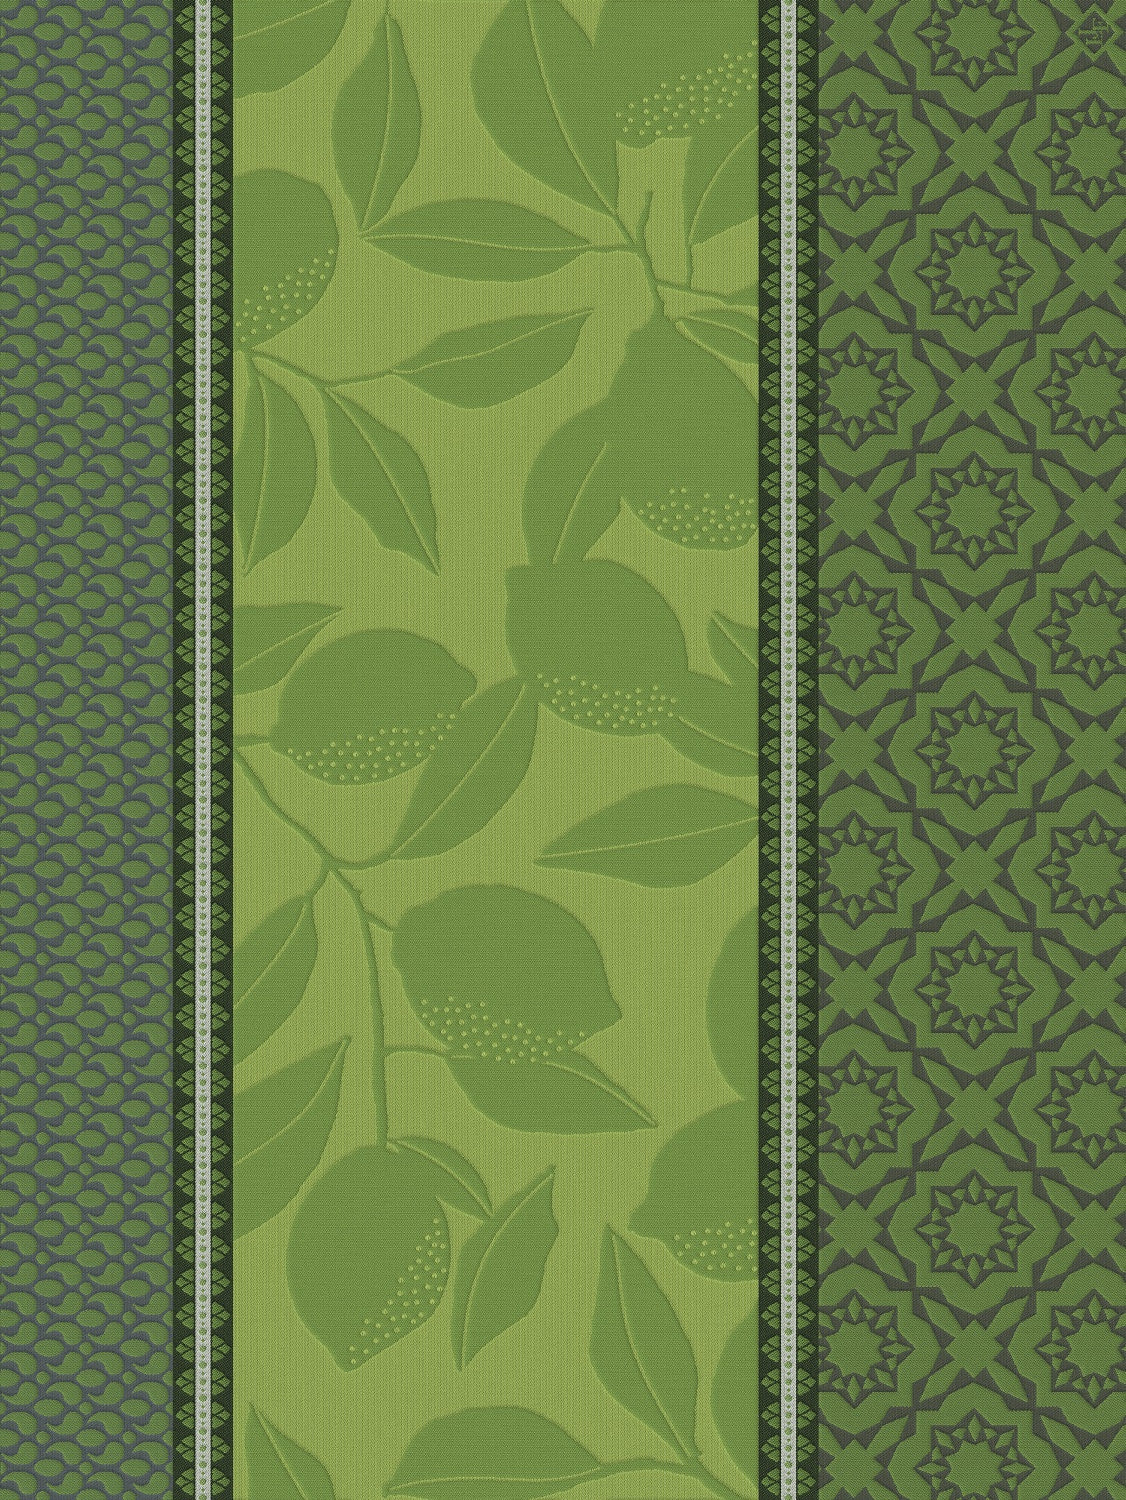 Jacquard Français "Sous les Citronniers" (Green), Woven cotton tea towel. Made in France.